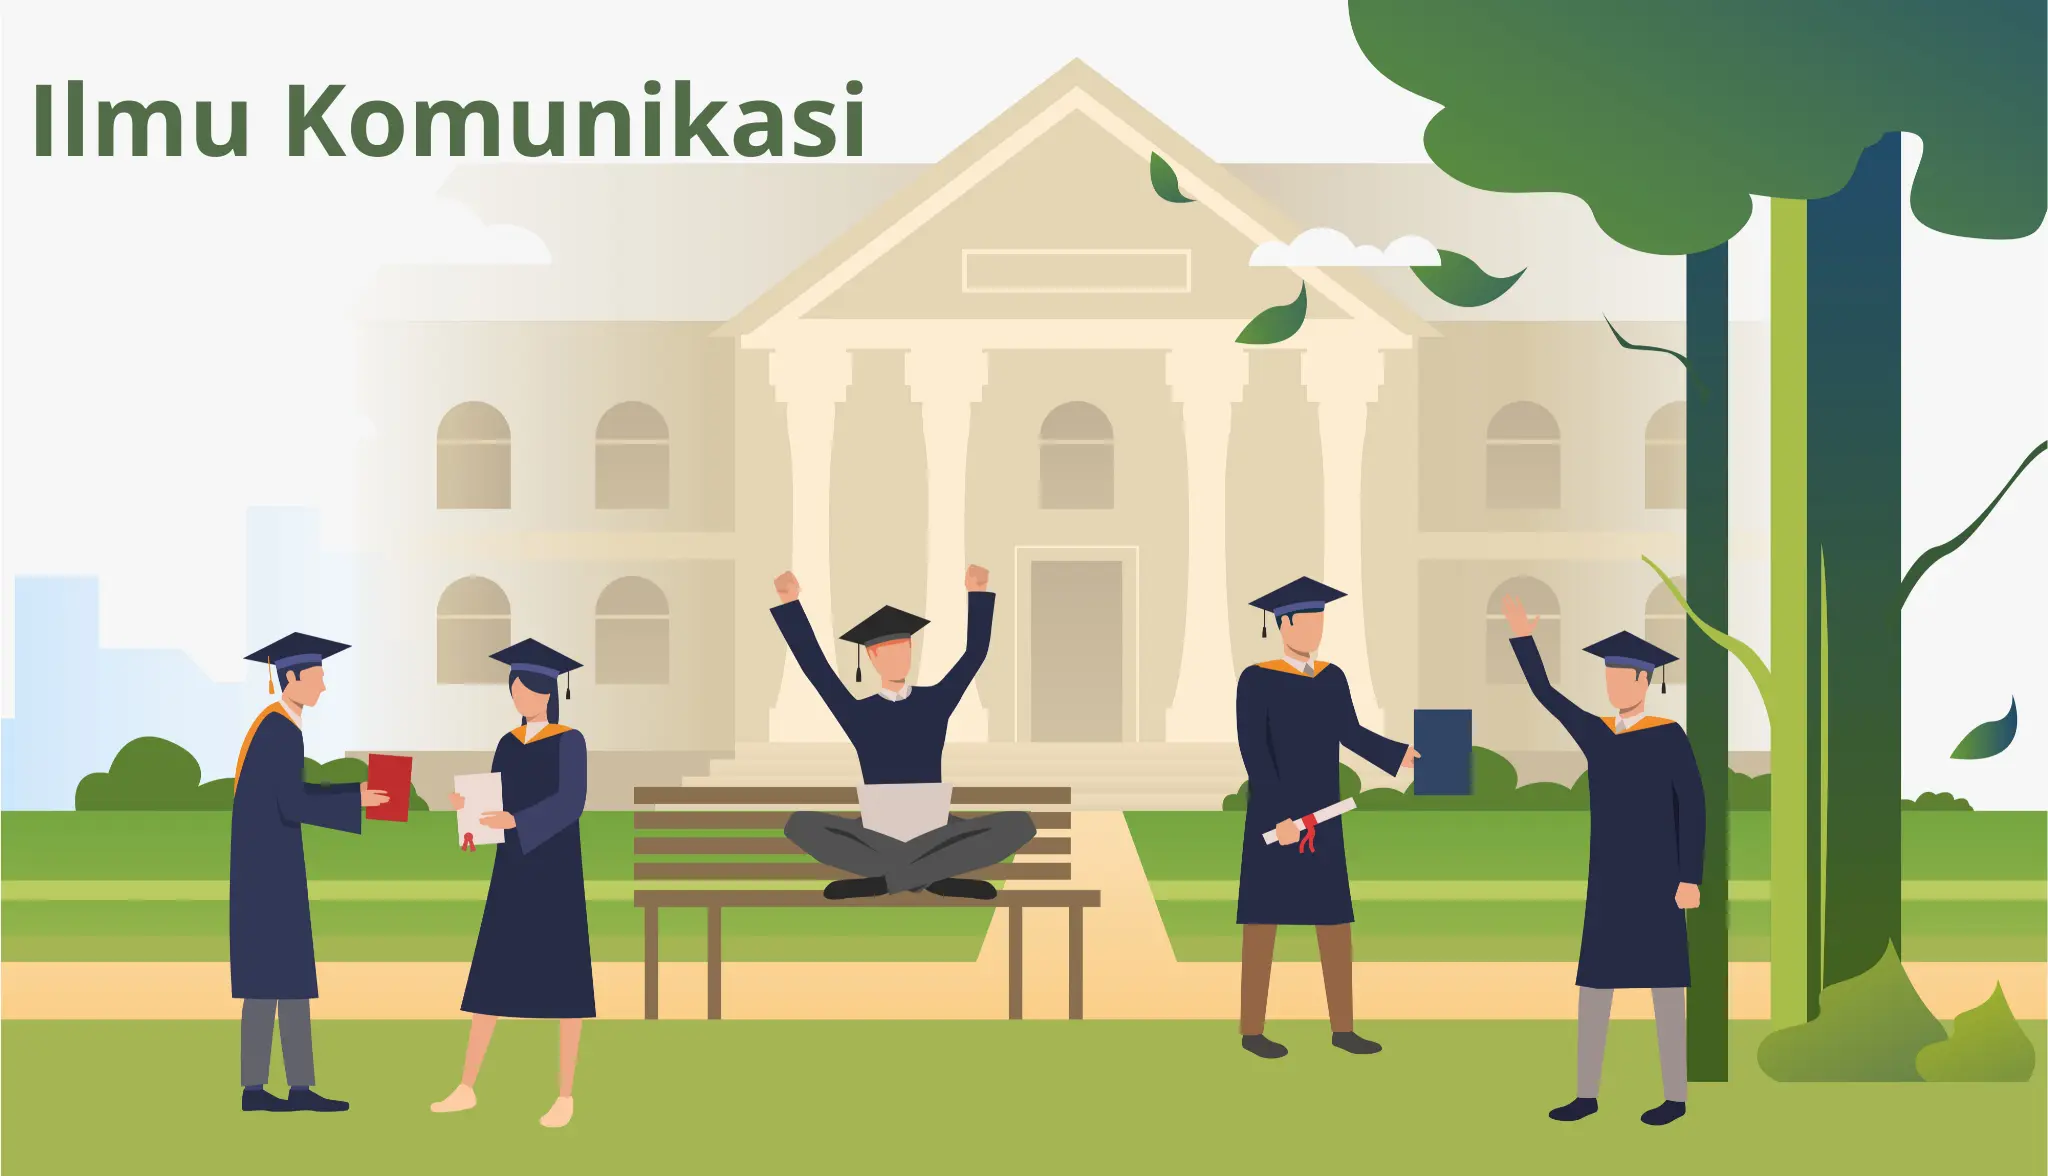 8 Universitas Jurusan Ilmu Komunikasi Terbaik di Indonesia